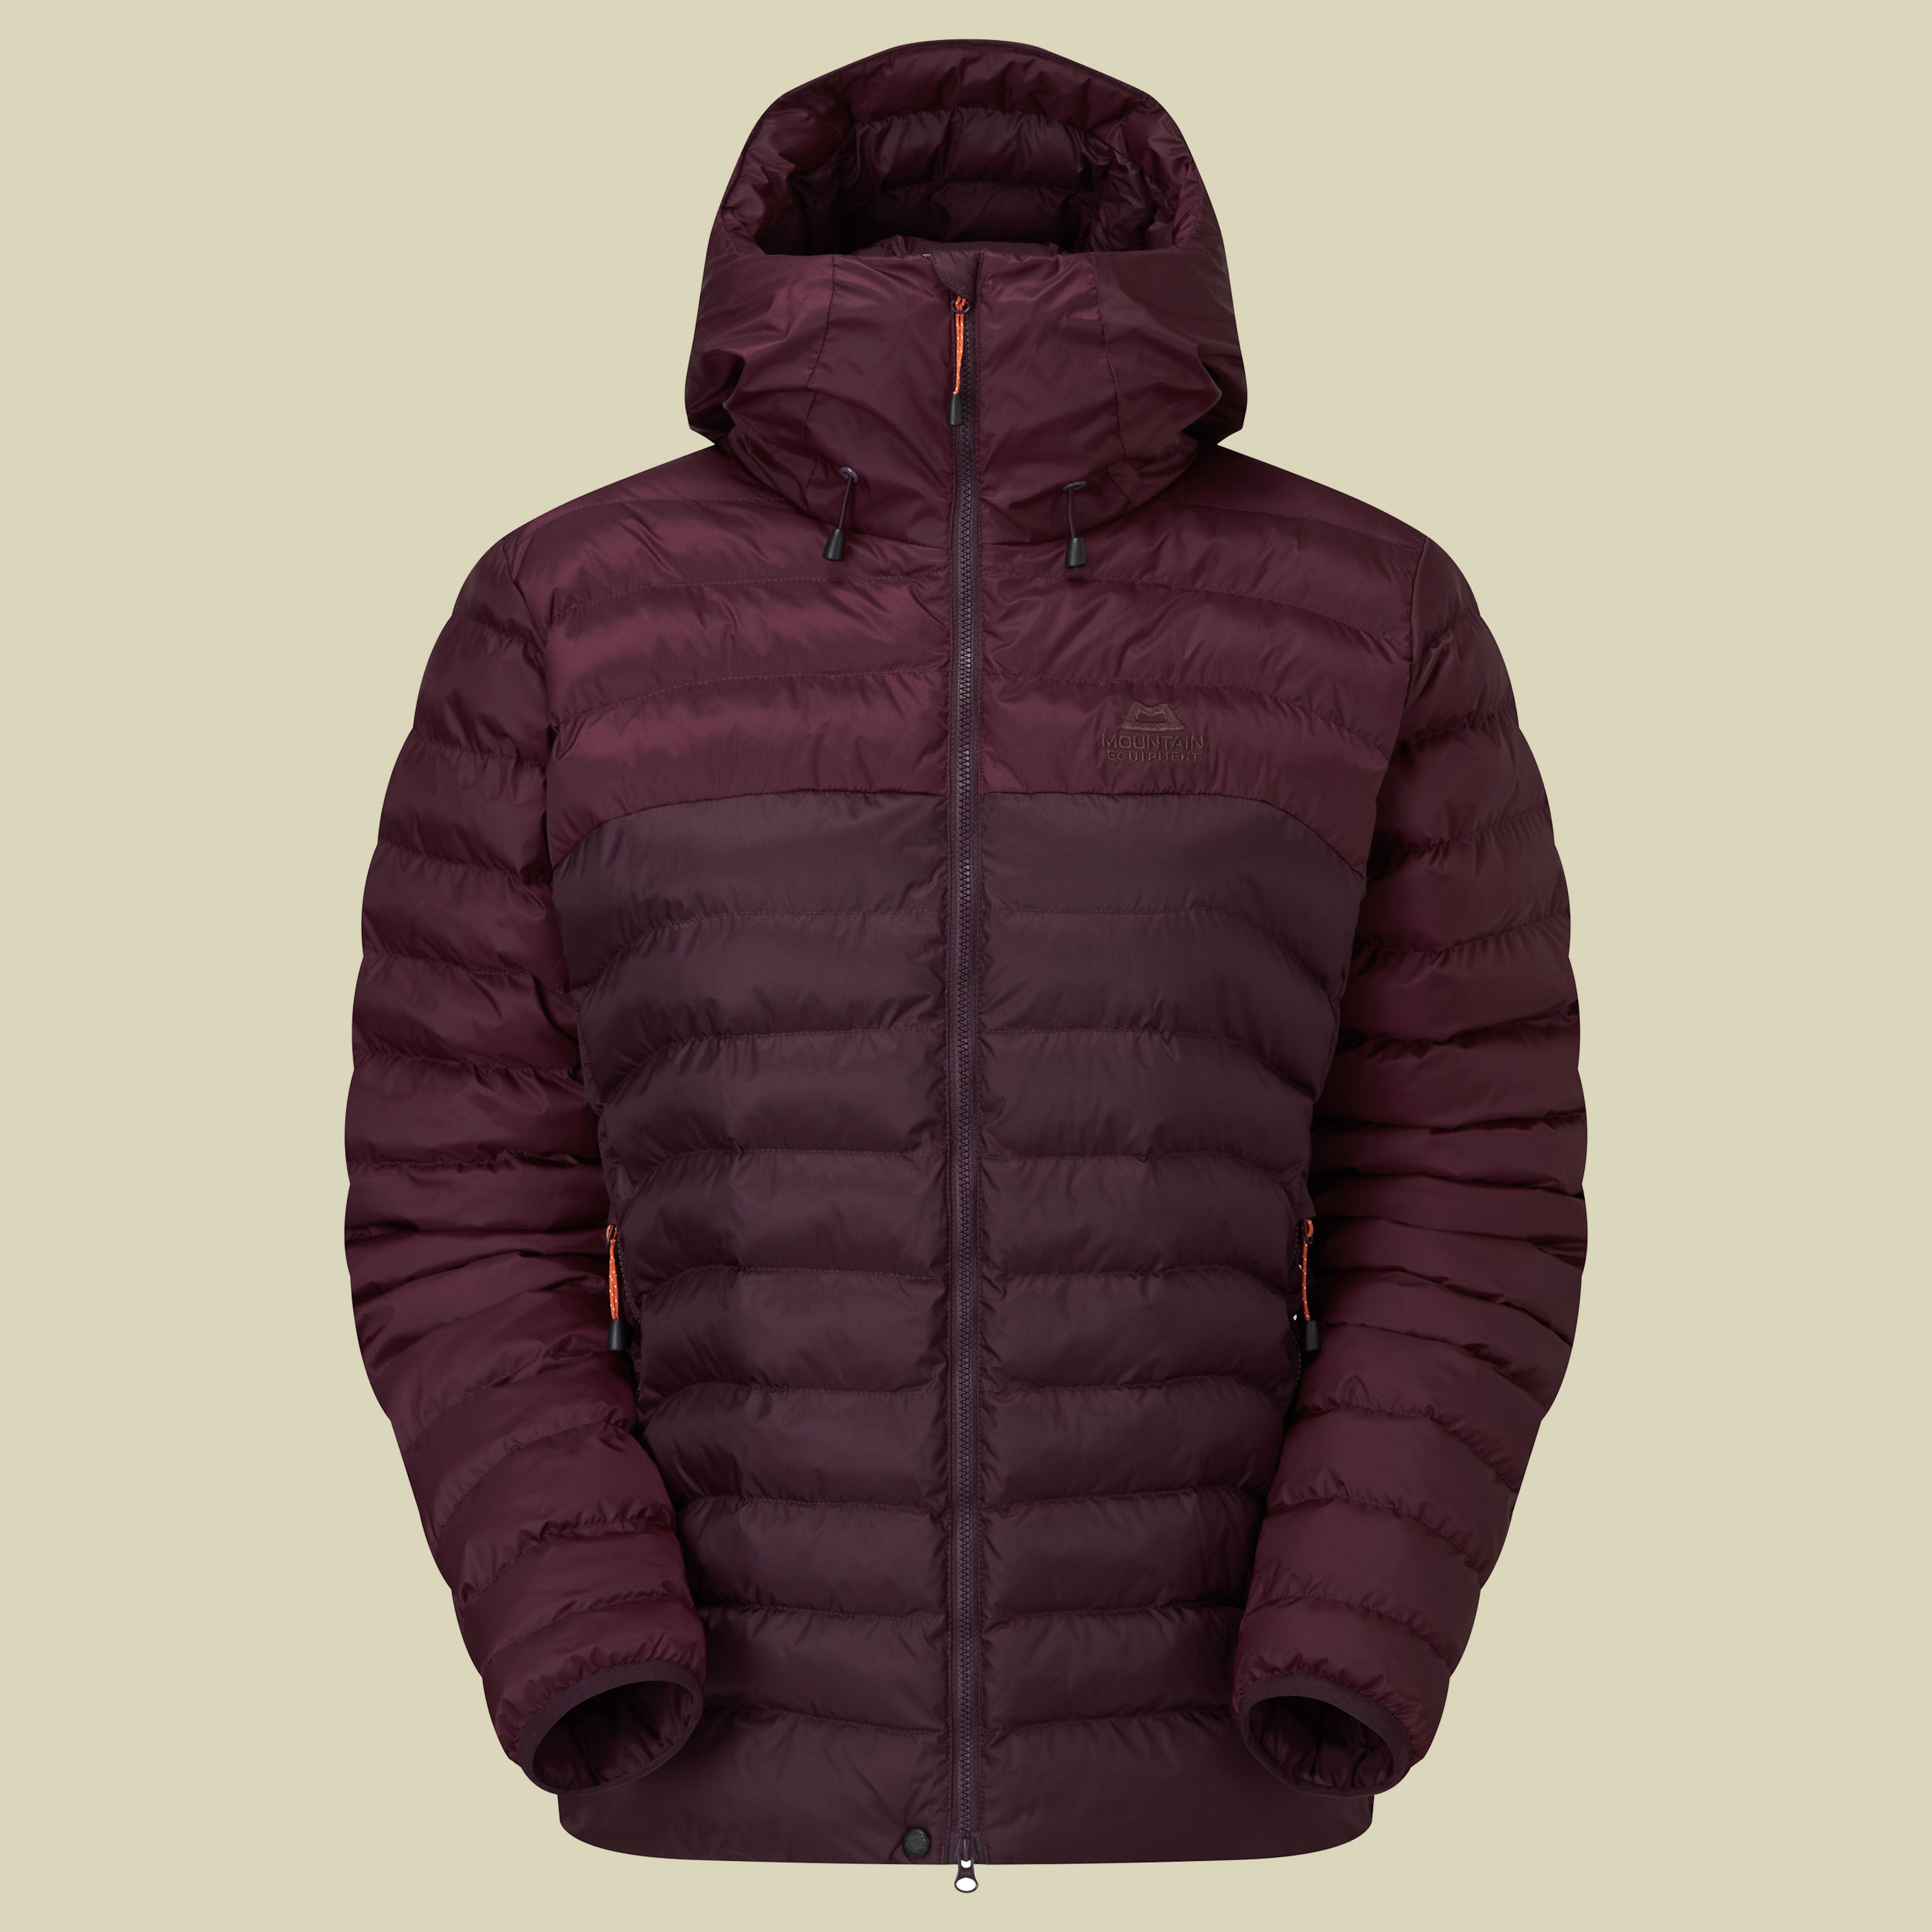 Superflux Jacket Women Größe M (12) Farbe raisin/mulberry